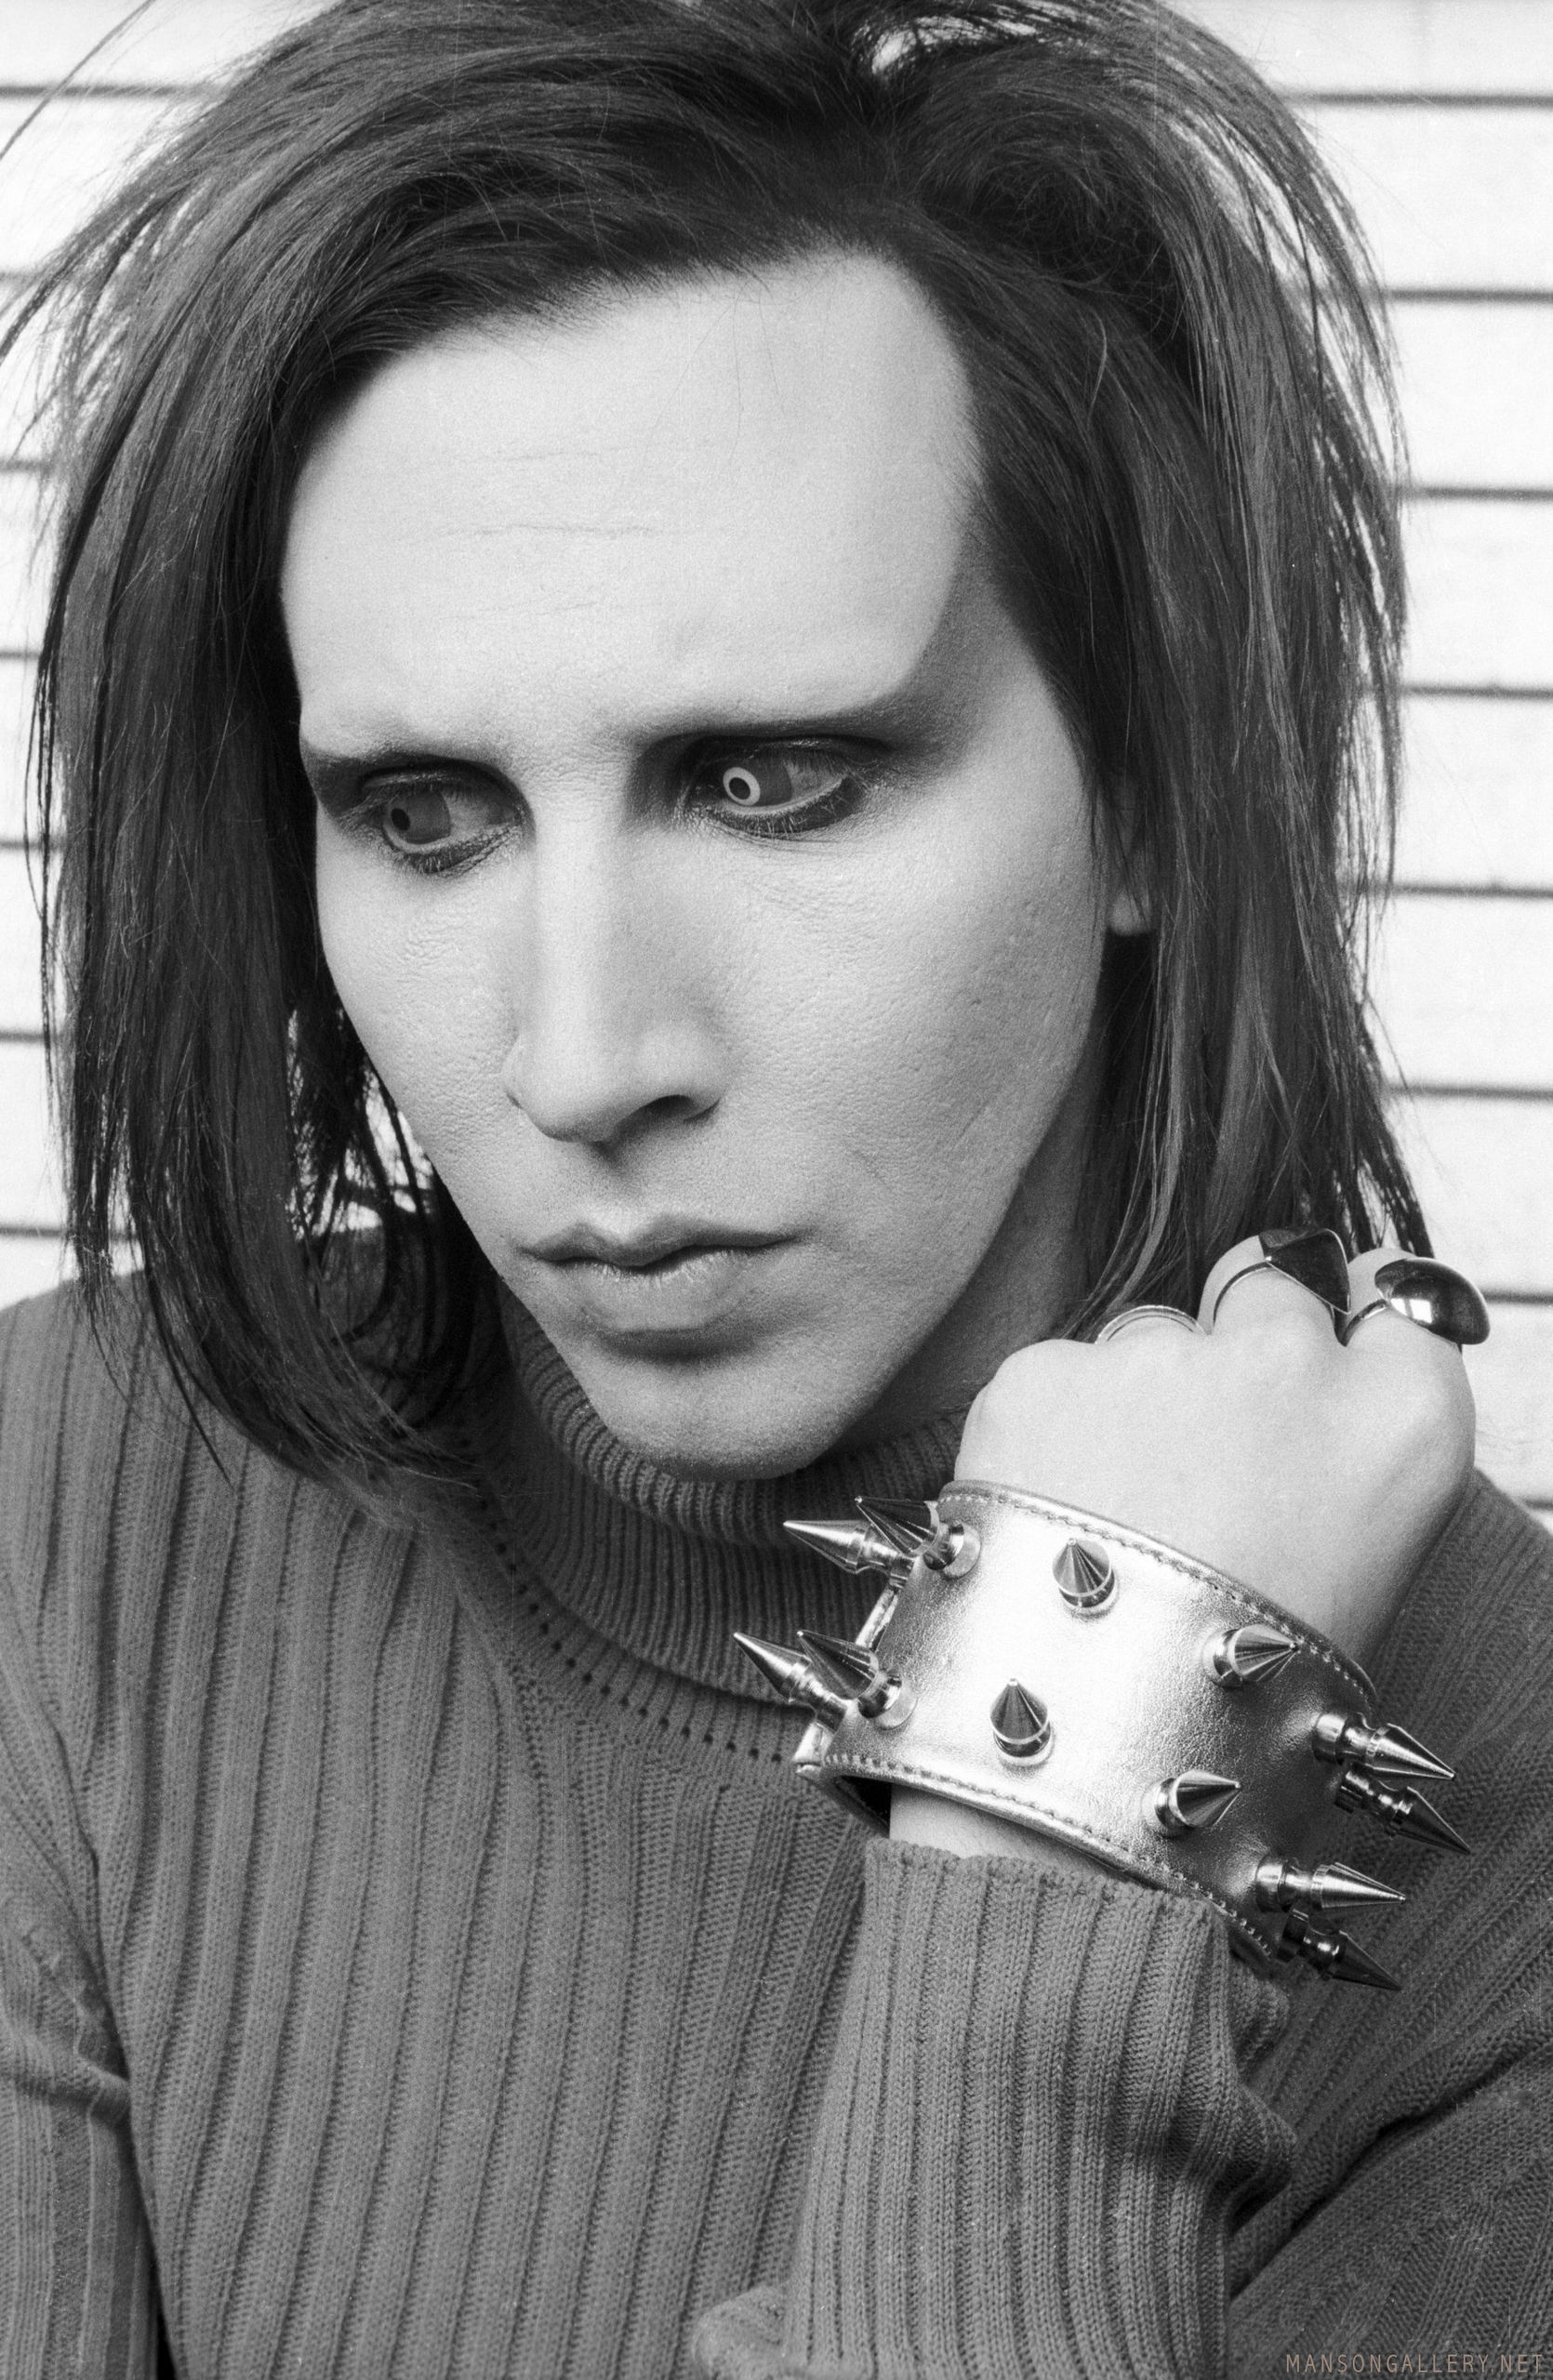 Marilyn Manson, Provocative image, Fan favorite, Music fan community, 1670x2560 HD Phone